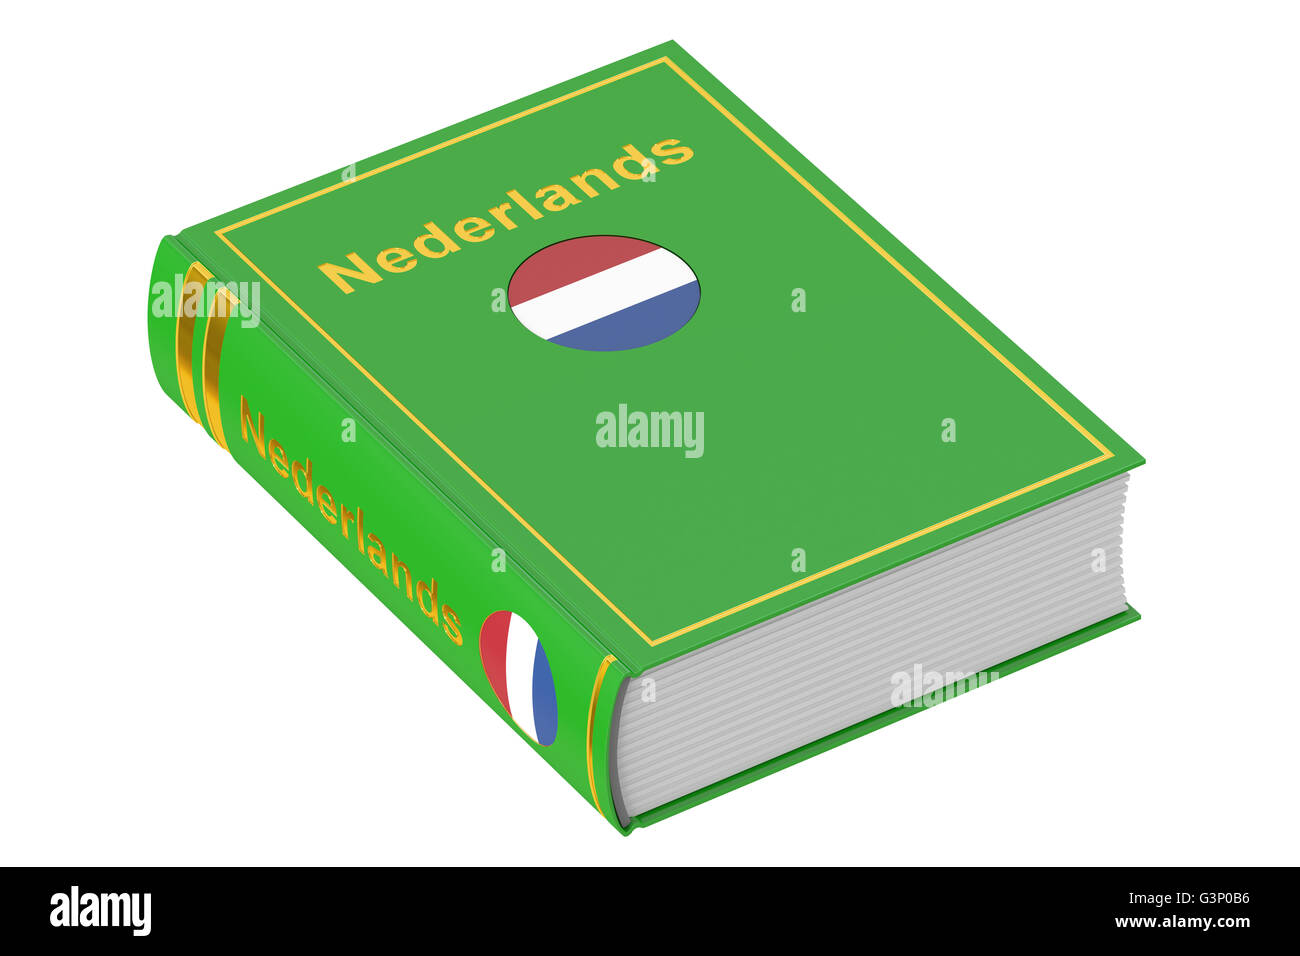 Netherlandish language textbook, 3D rendering isolated on white background Stock Photo